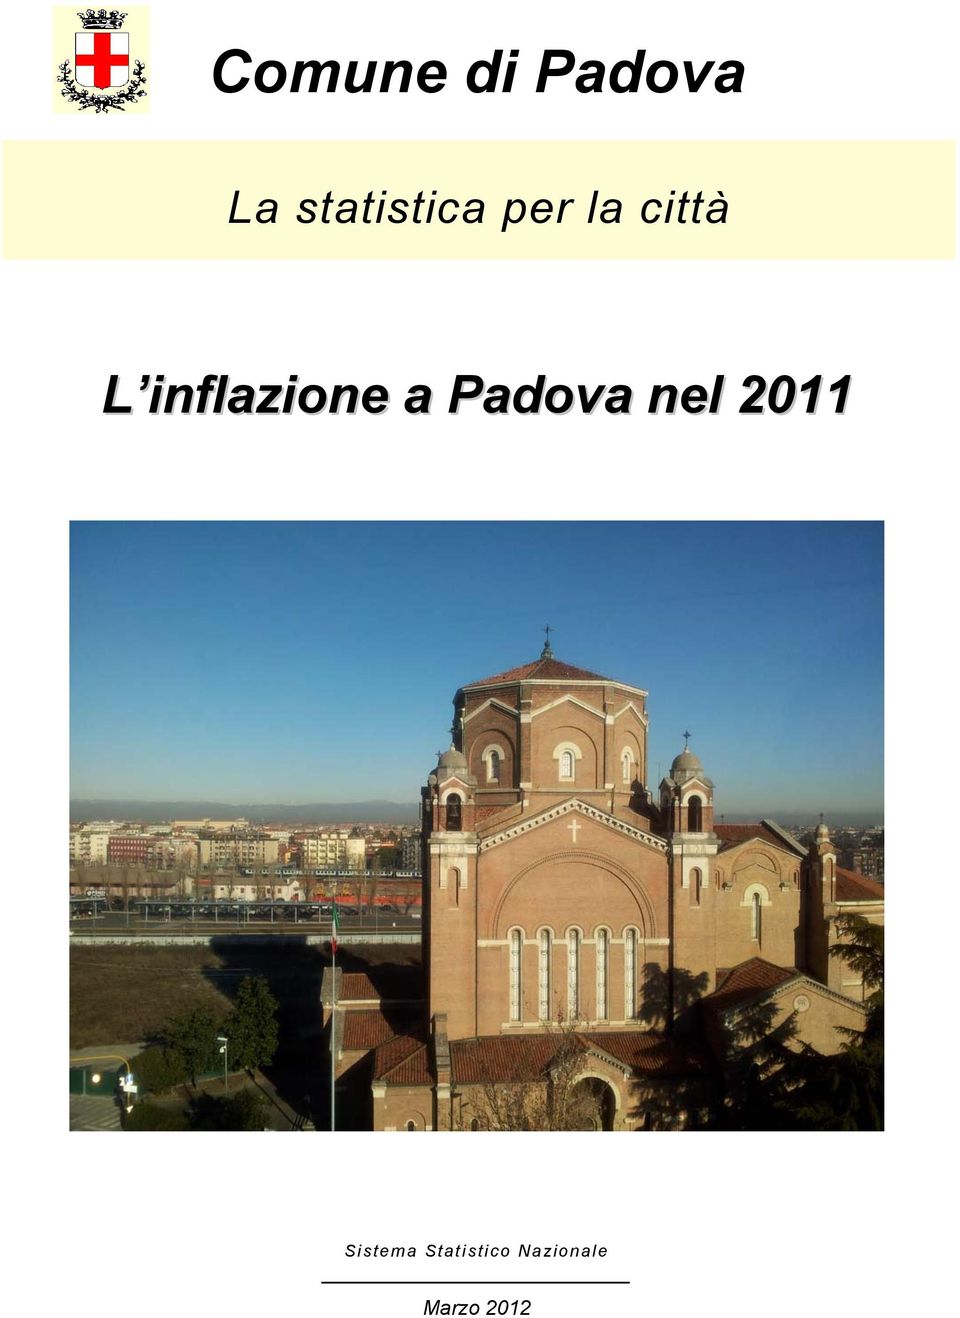 inflazione a Padova nel 2011